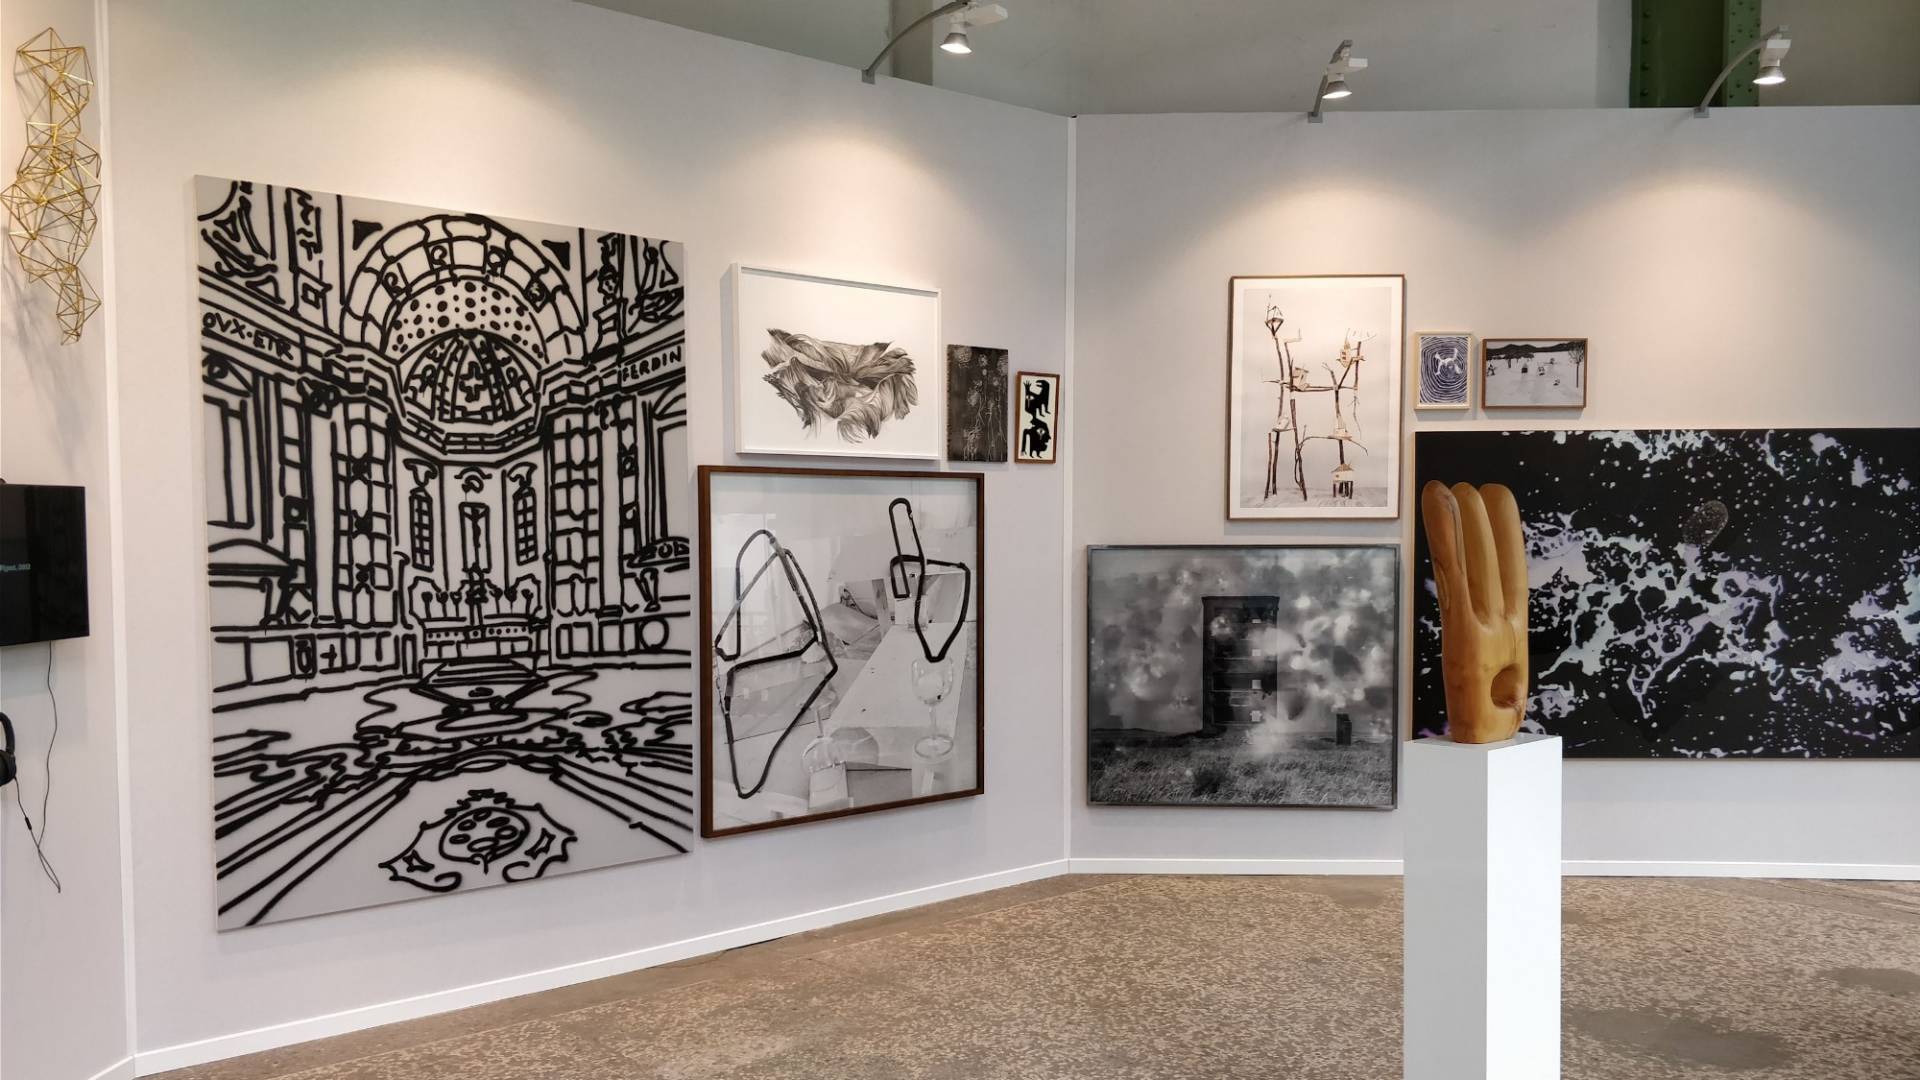 Sur l’image, on voit diverses œuvres de la collection d’art Helvetia, exposées au salon Art Paris Art Fair 2018.